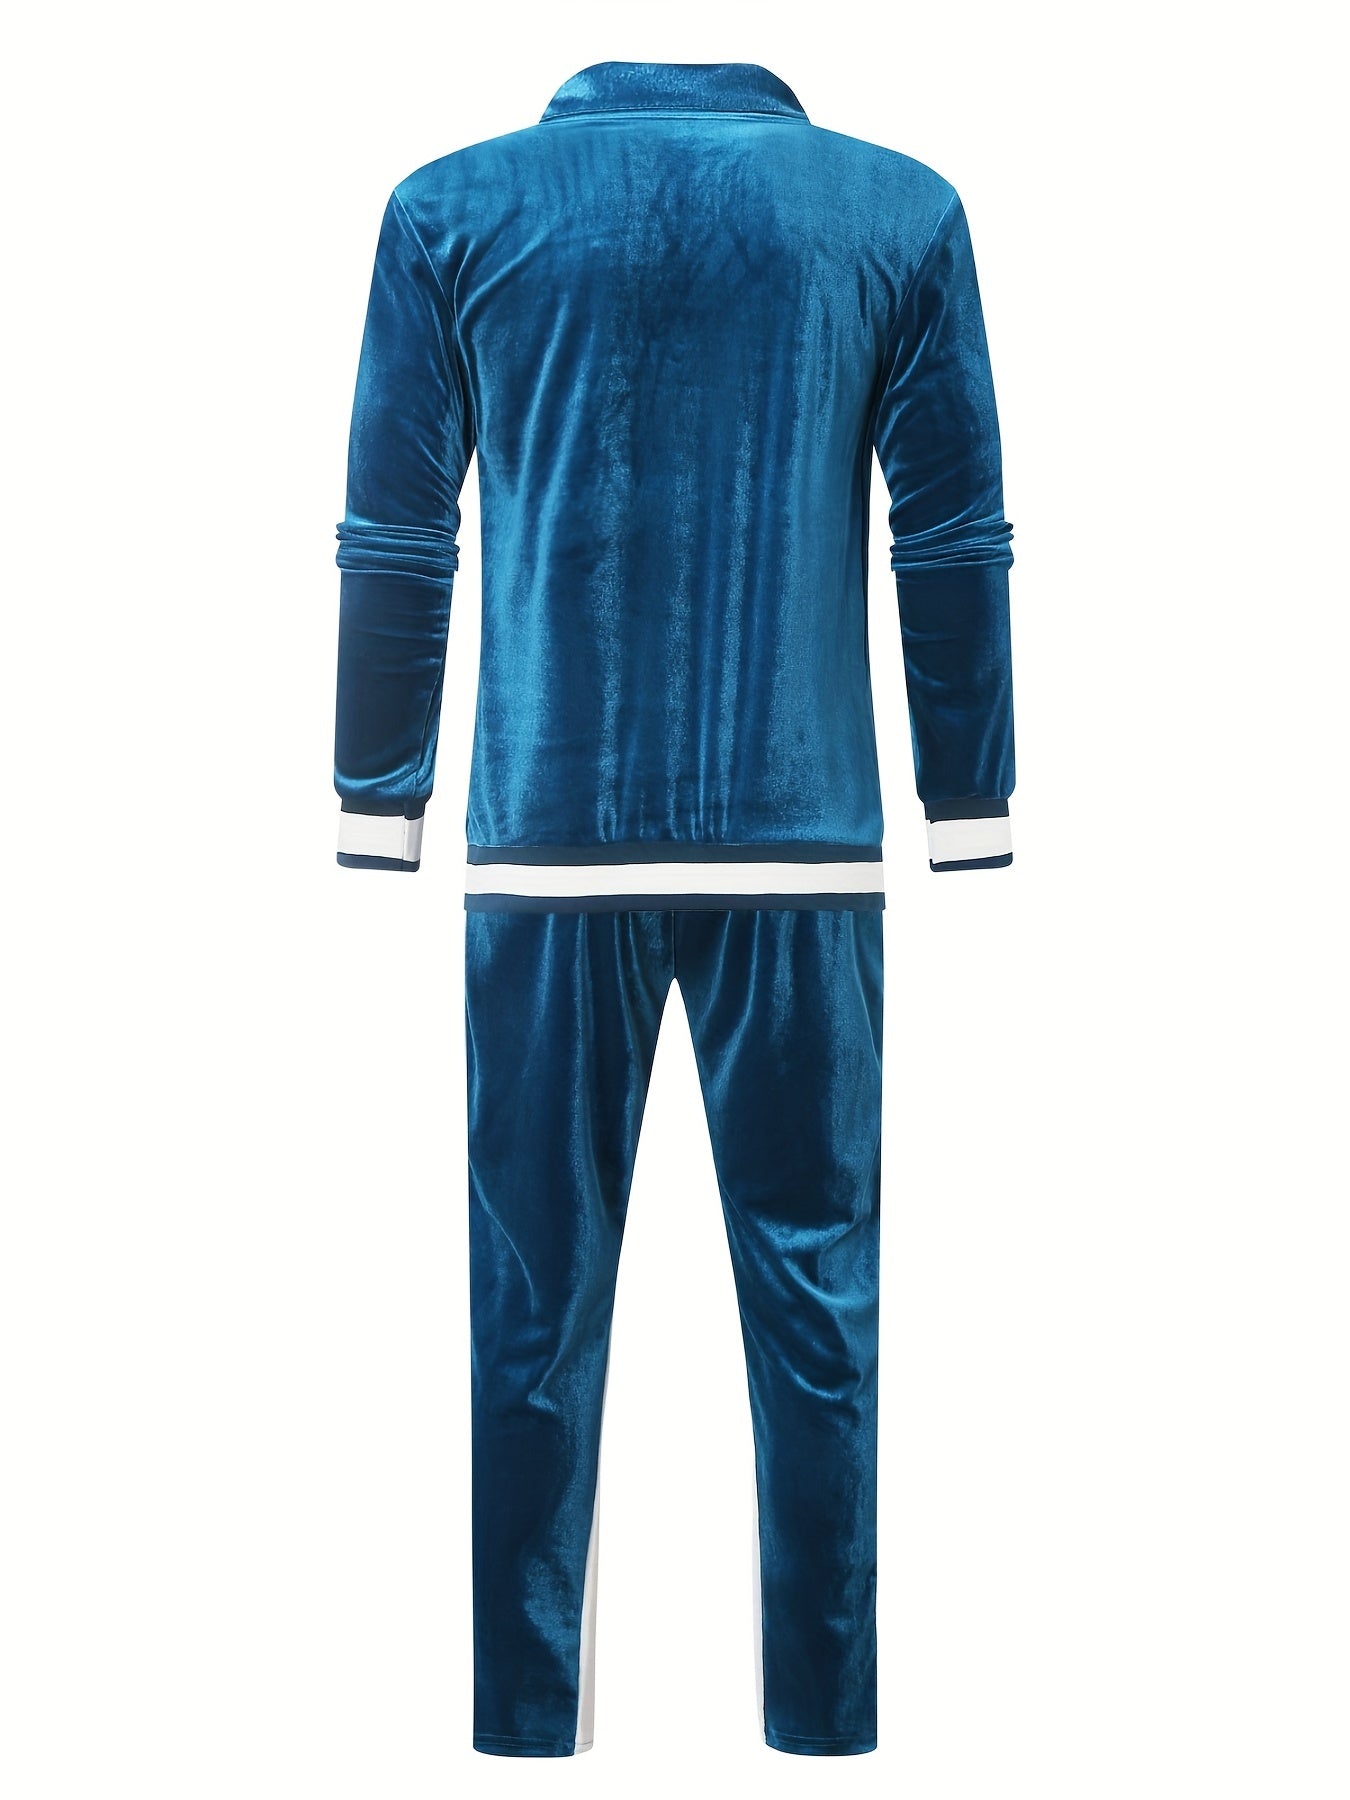 Premium Velvet Training Suit Set for Men - Luxurious and Versatile